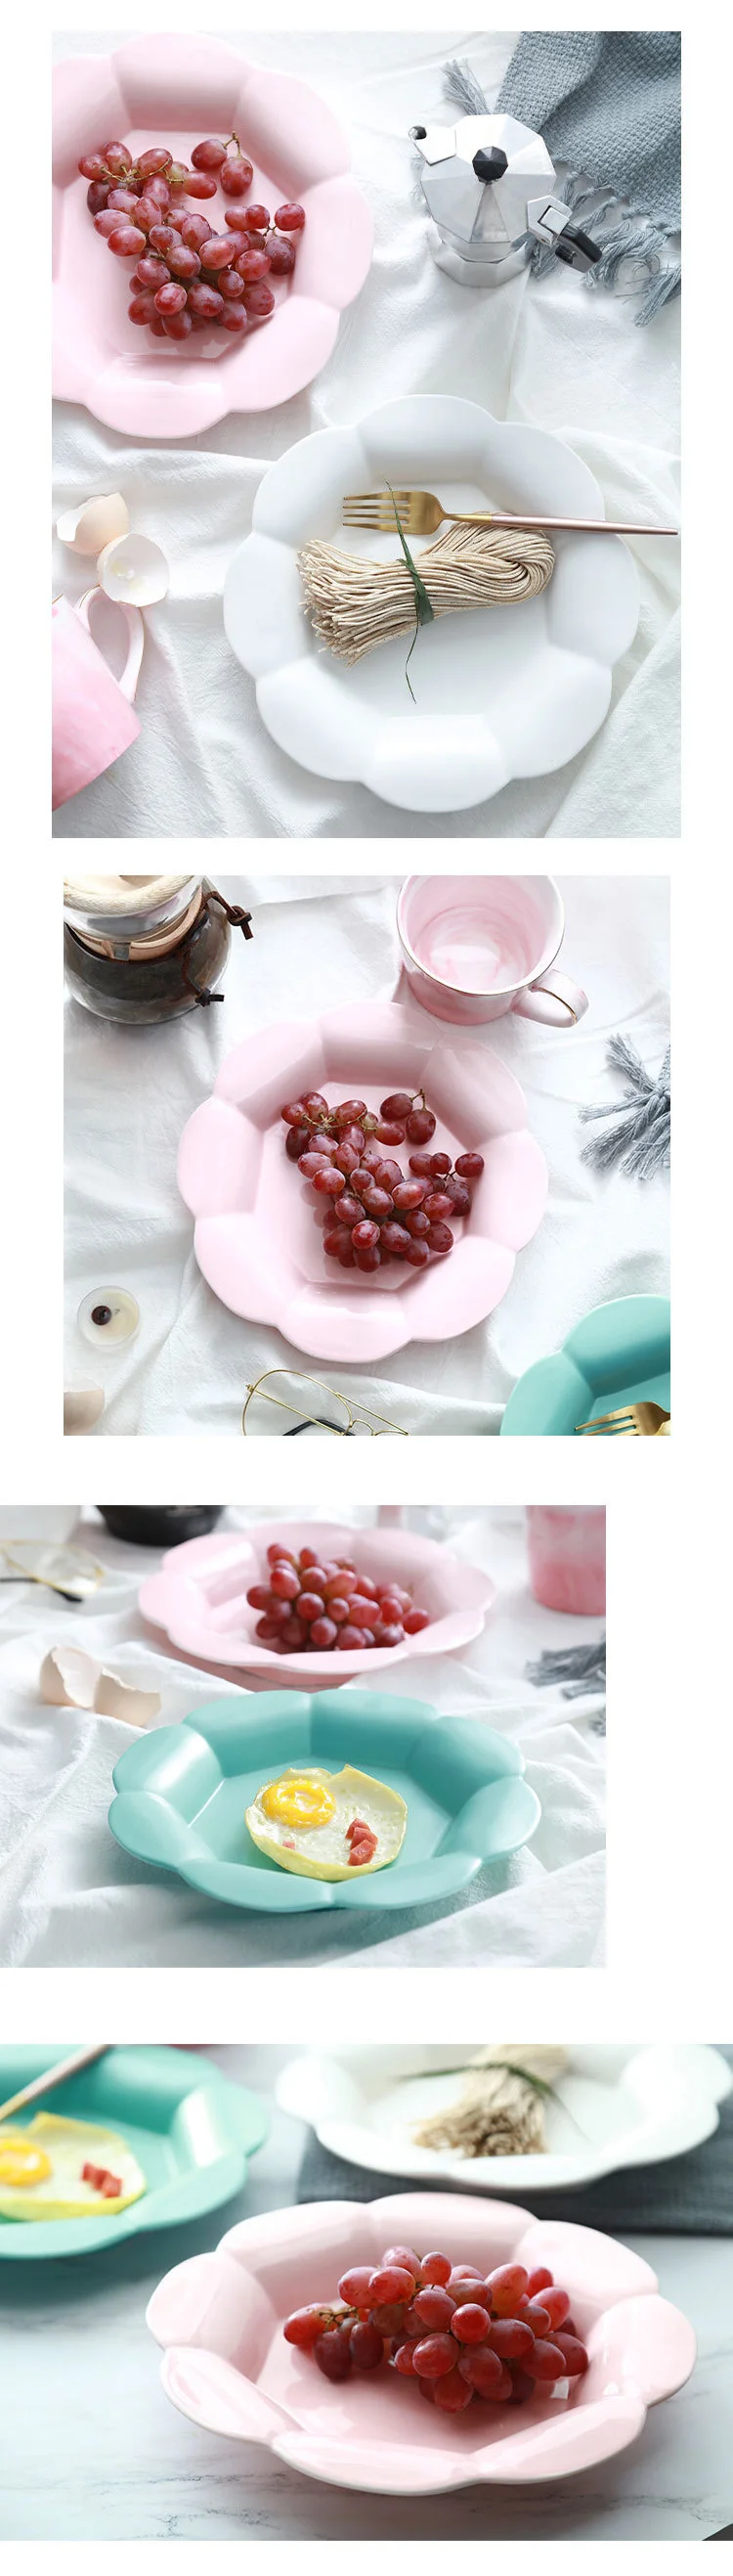 1Pce матовая керамика в форме цветка десертные тарелки креативные фото реквизит торт фруктовое Блюдо Поднос для завтрака кухонная посуда